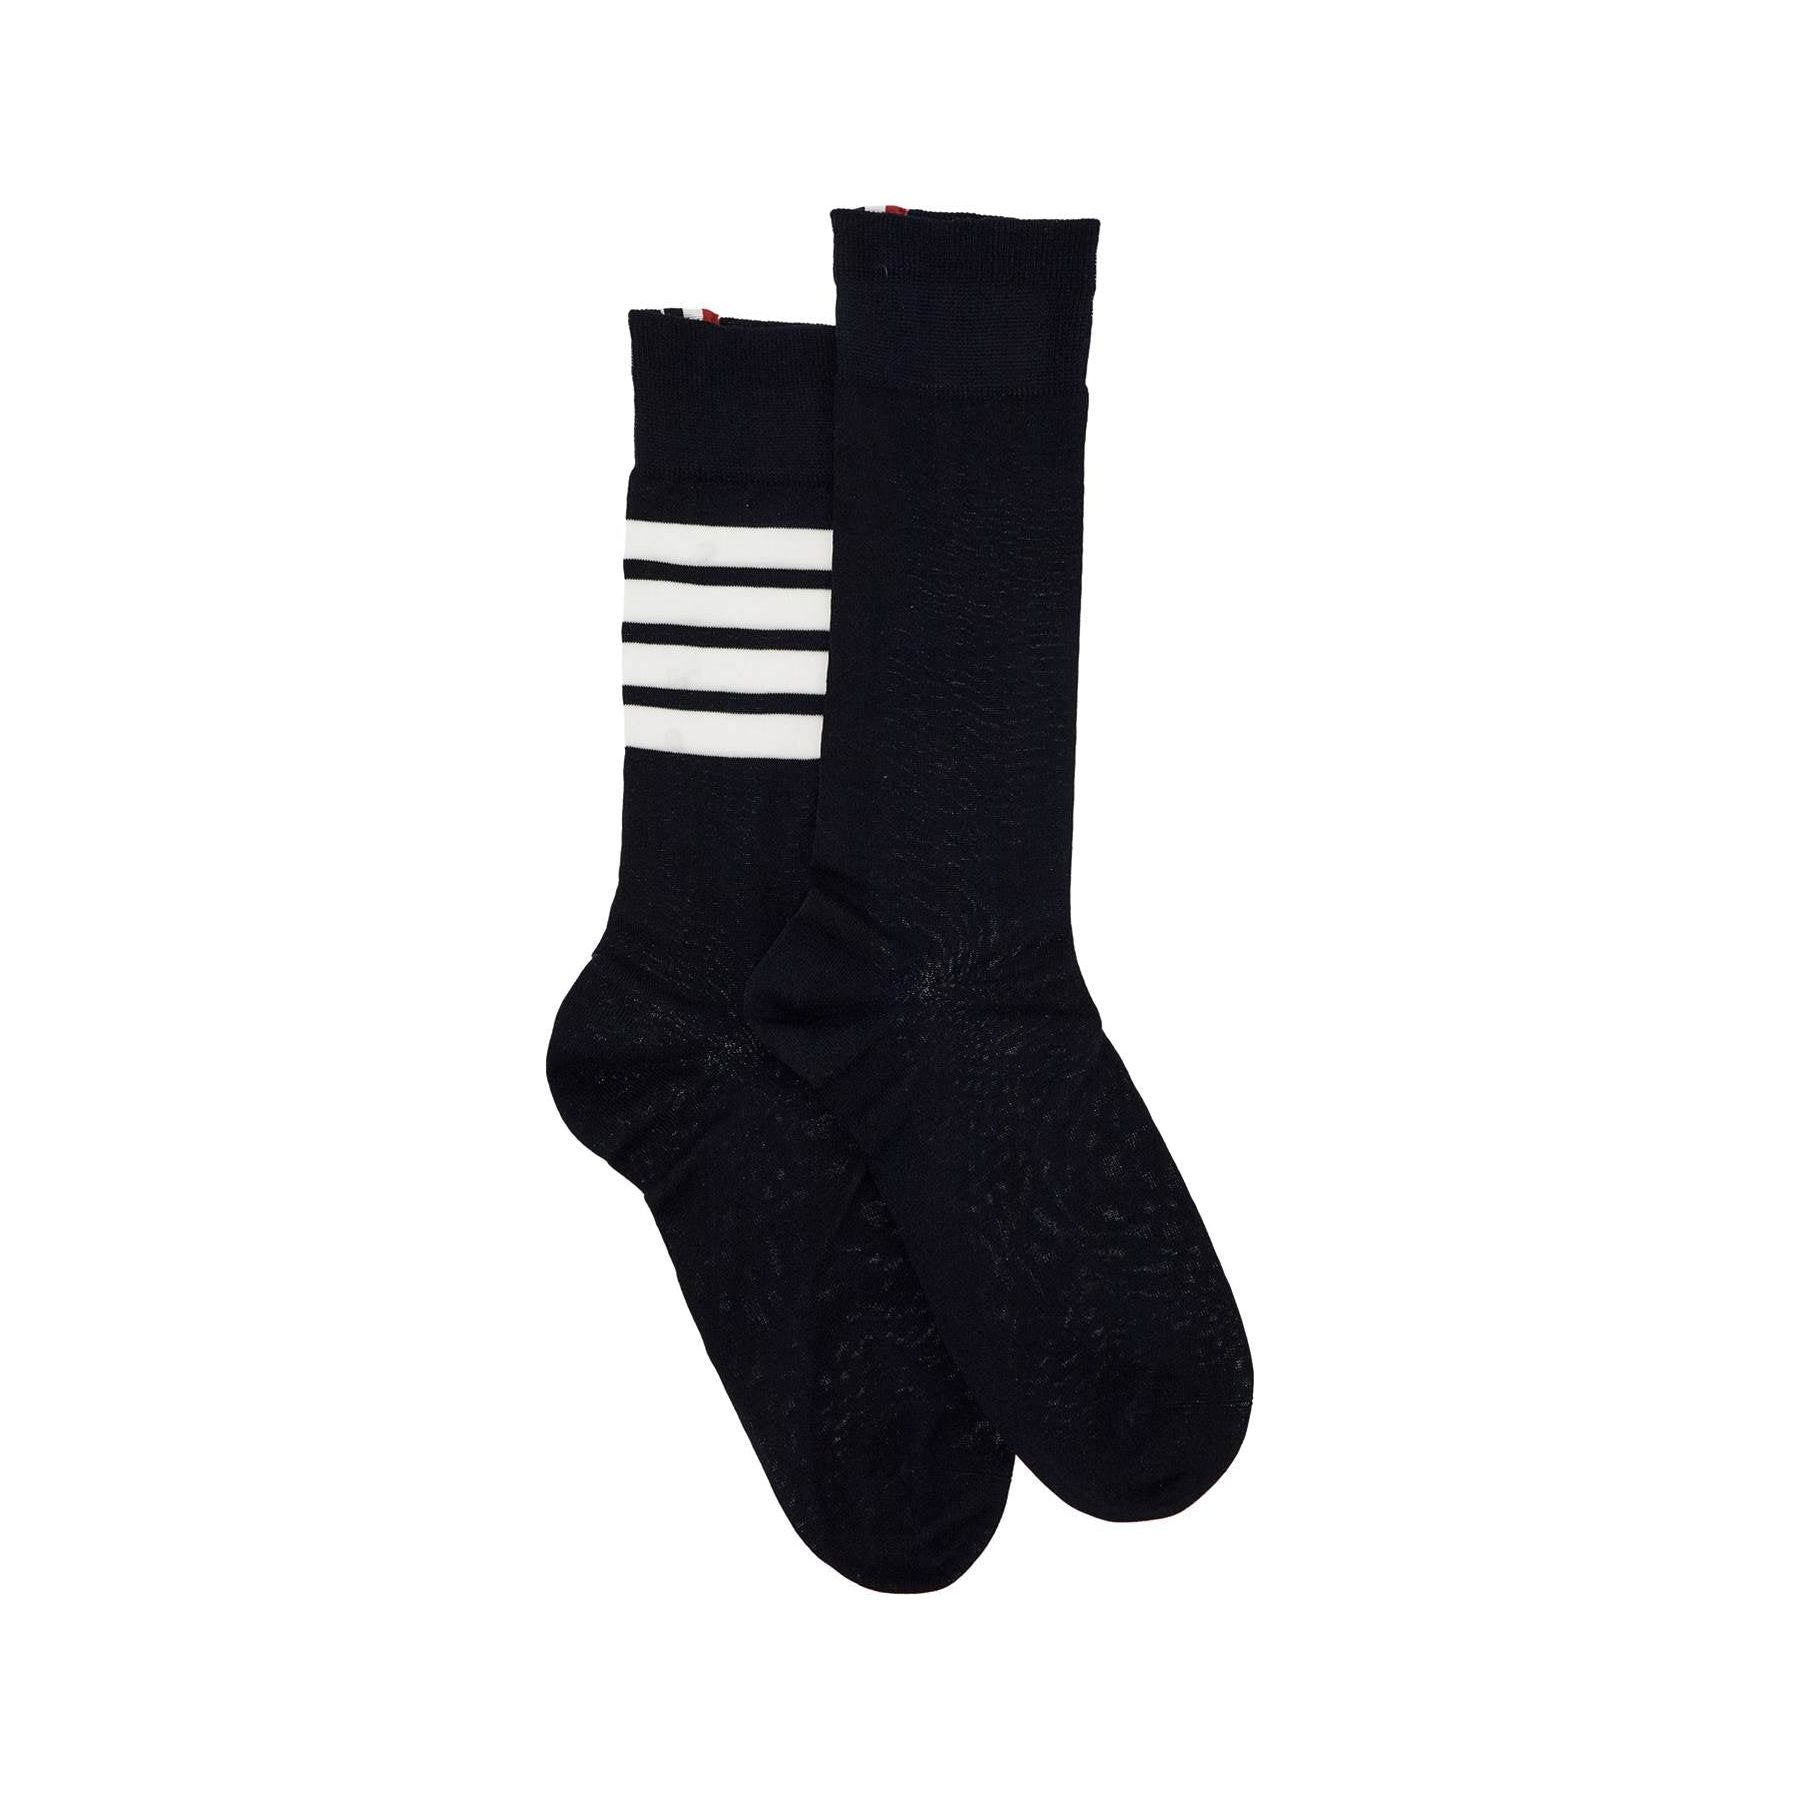 Lightweight 4-Bar Cotton Socks